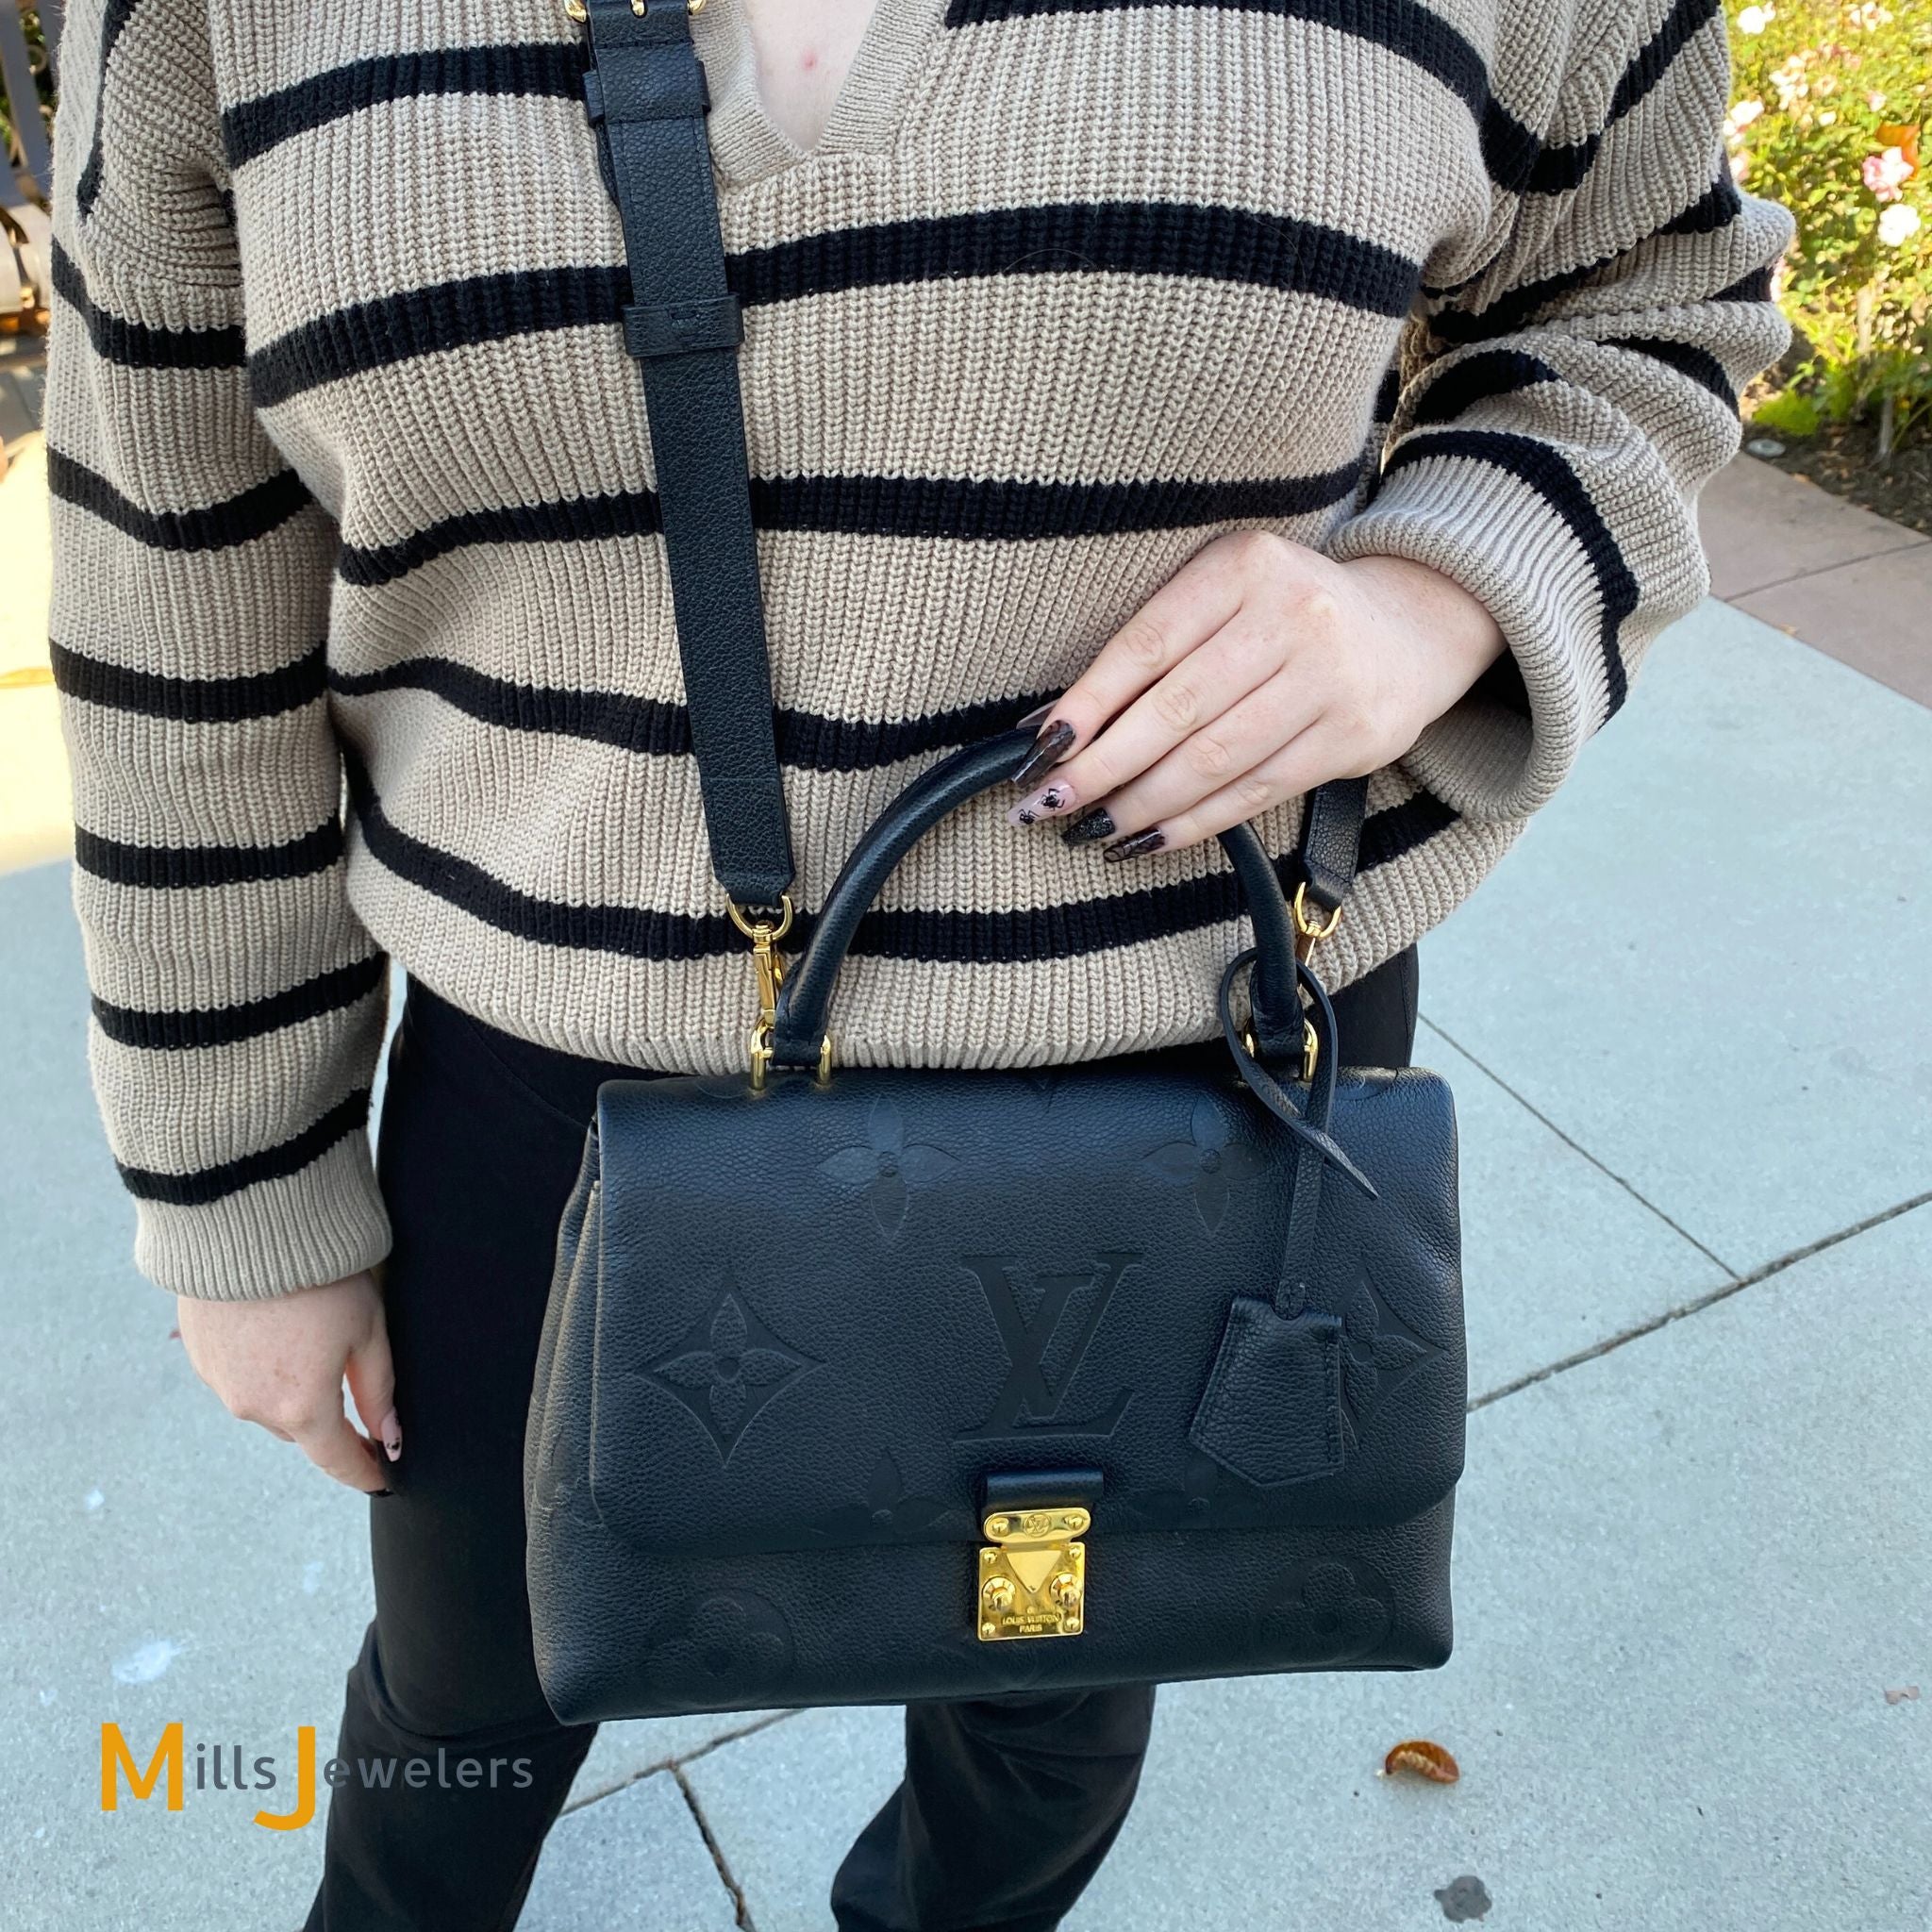 Madeleine MM Monogram Empreinte Leather - Women - Handbags